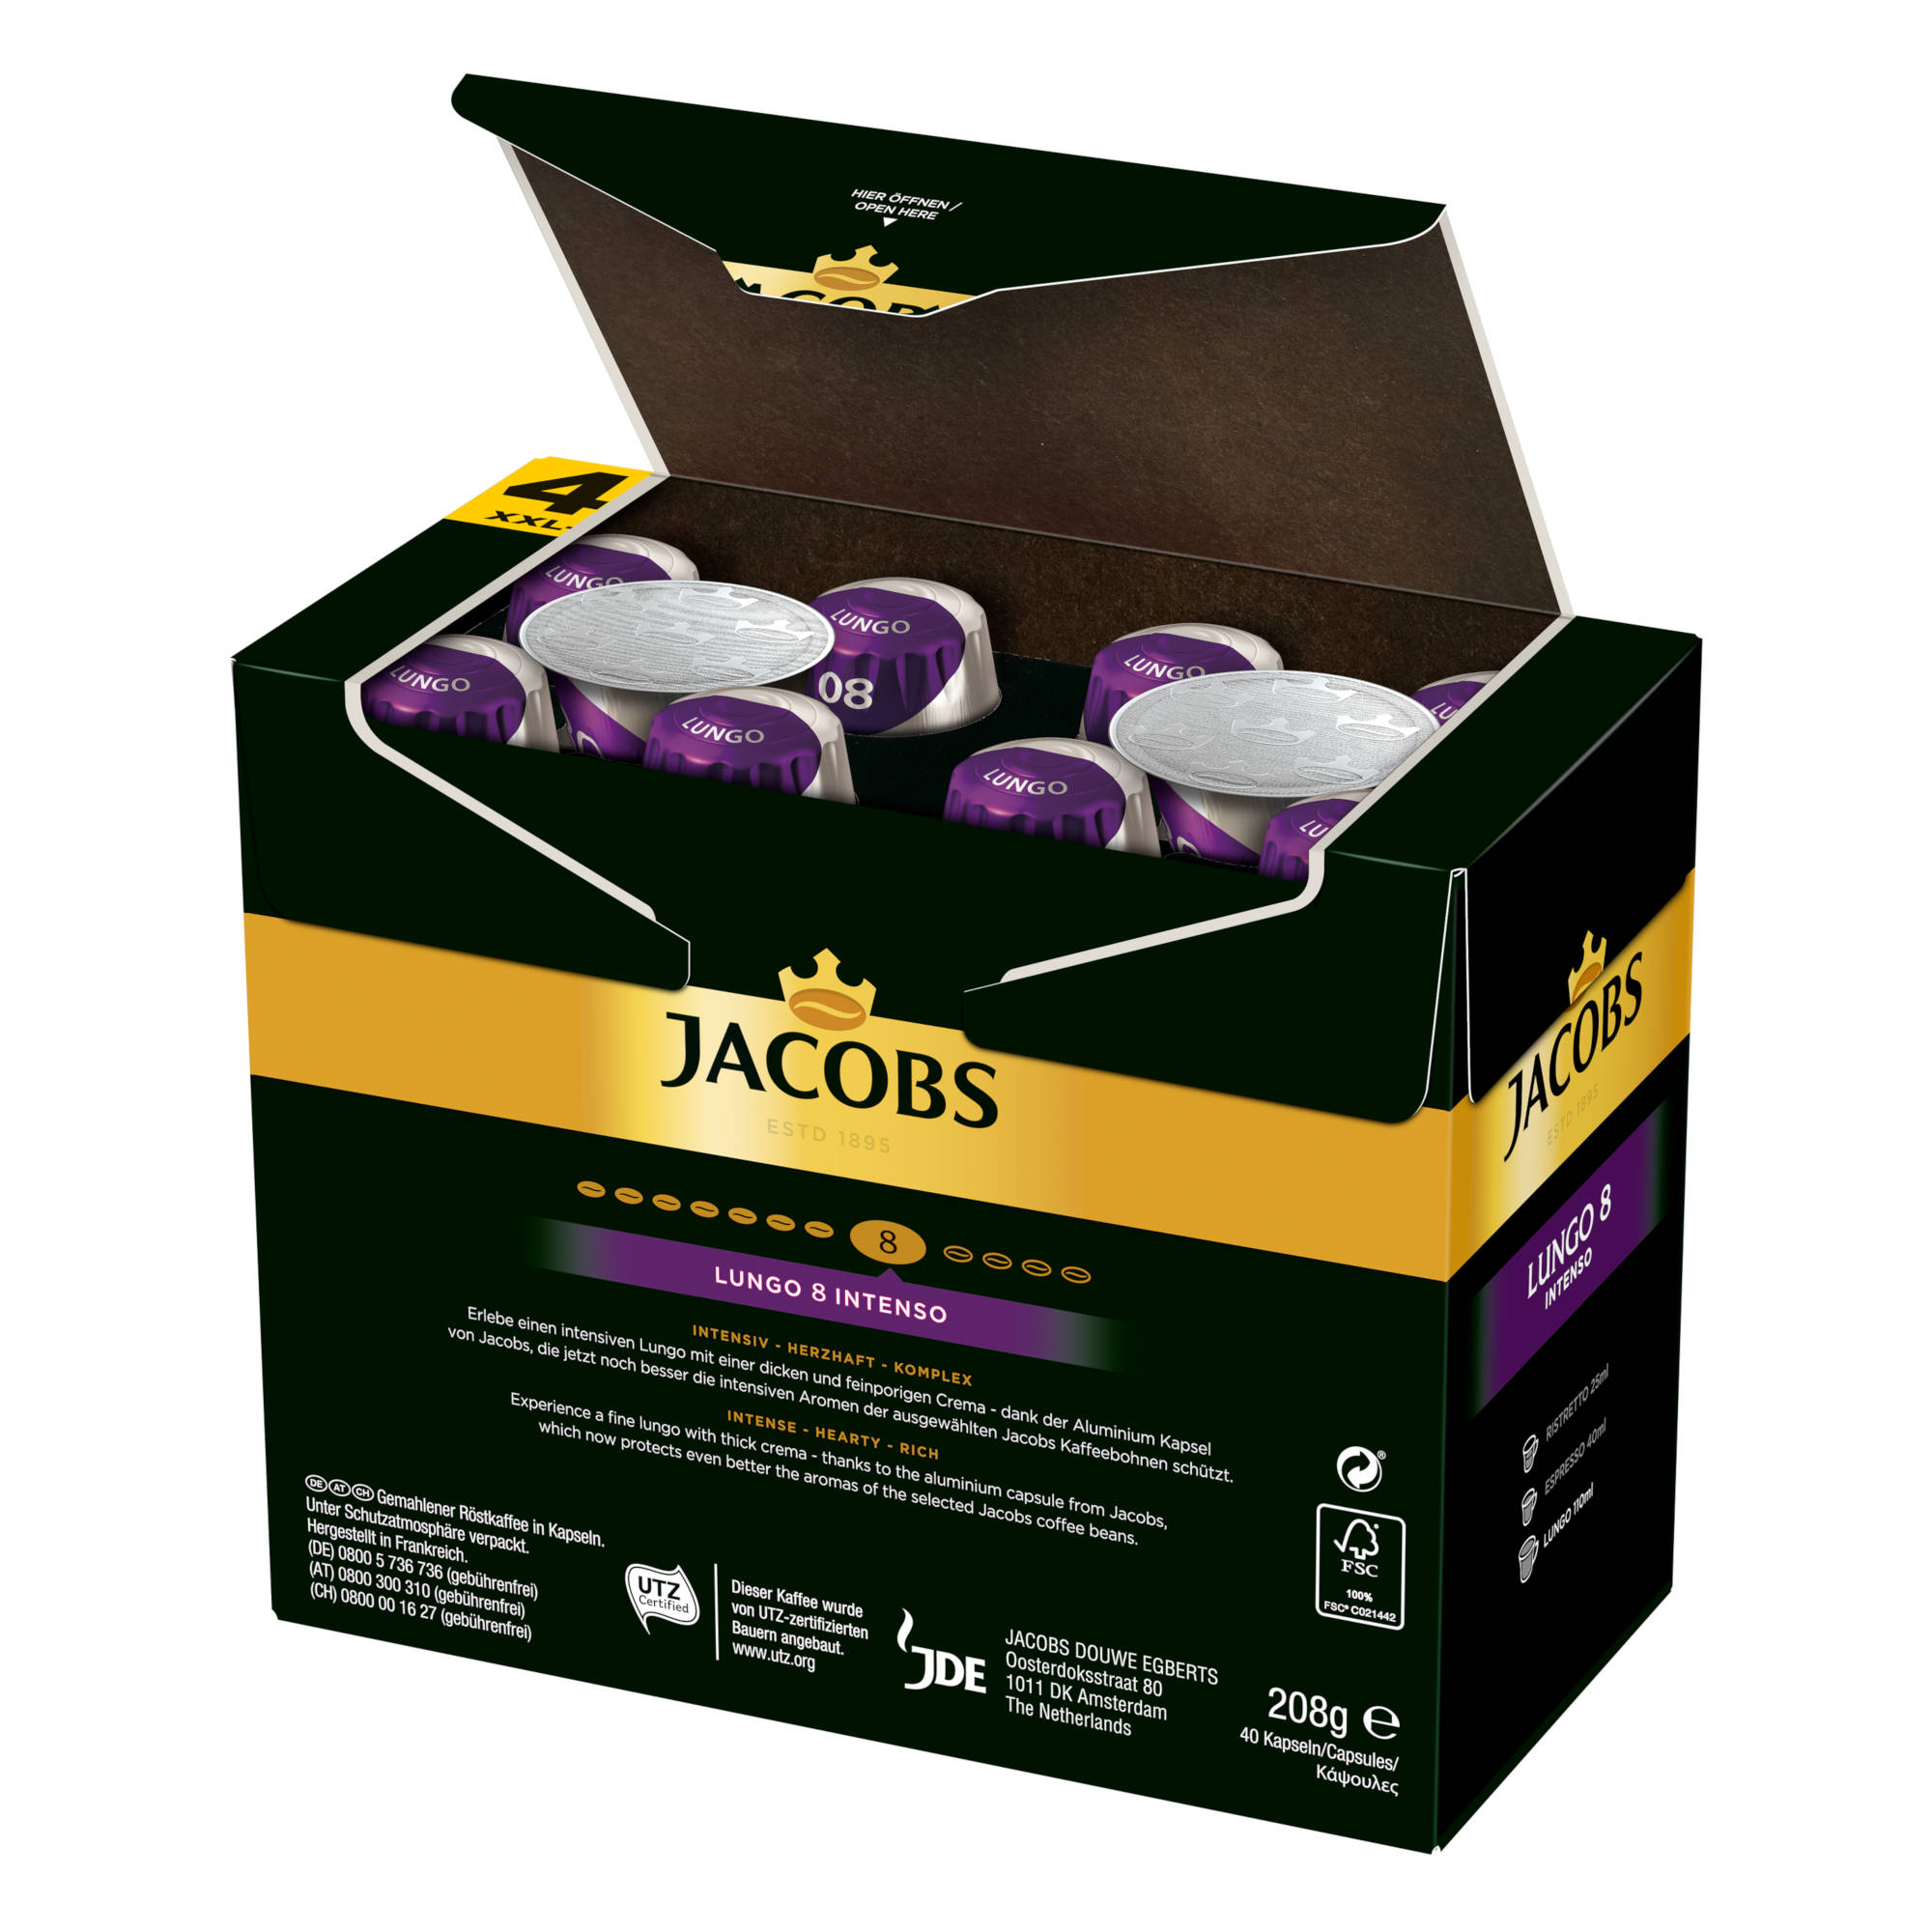 JACOBS Lungo 8 Intenso XXL-Pack x kompatible System) Kaffeekapseln 5 40 Nespresso®* (Nespresso